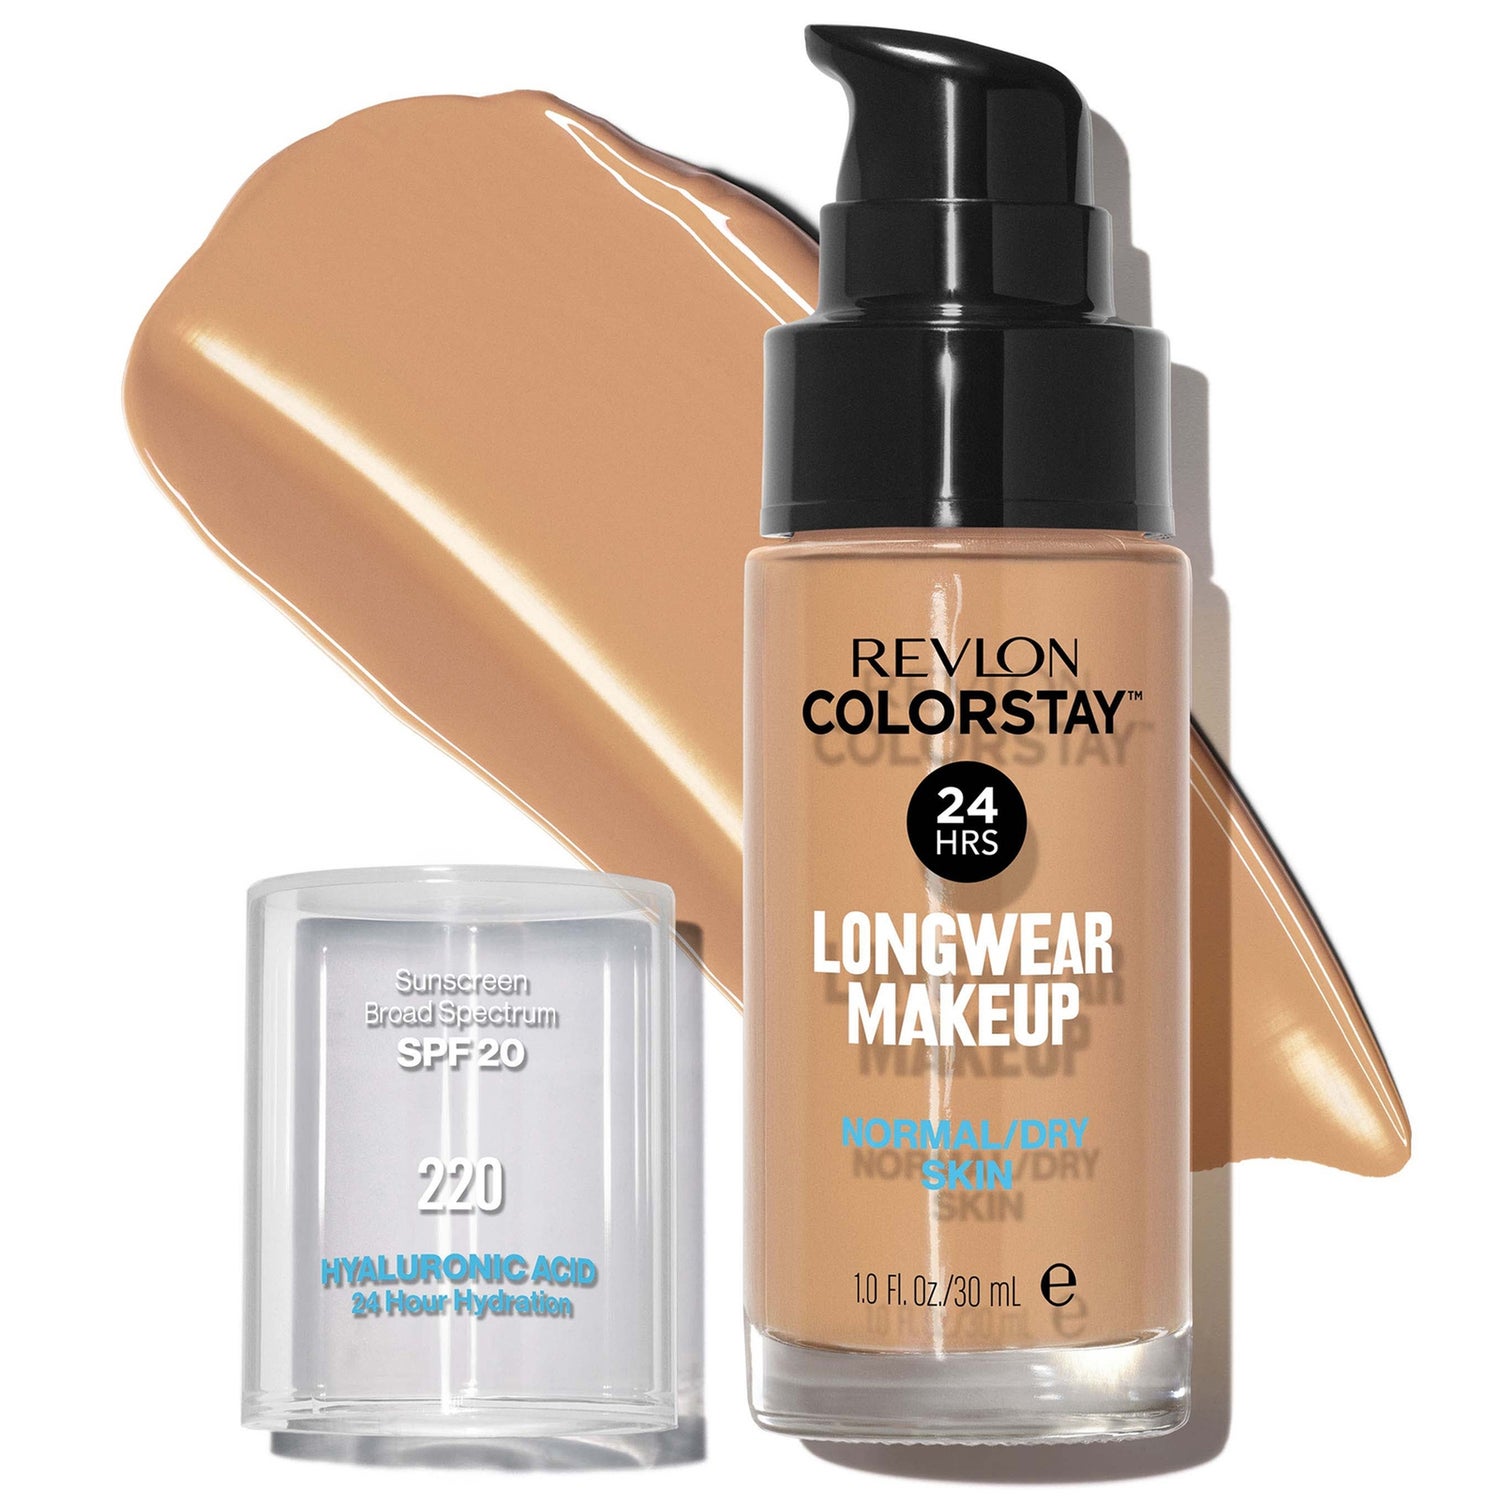 Revlon Colorstay Make-Up Foundation for Normal/Dry Skin (διάφορες αποχρώσεις)